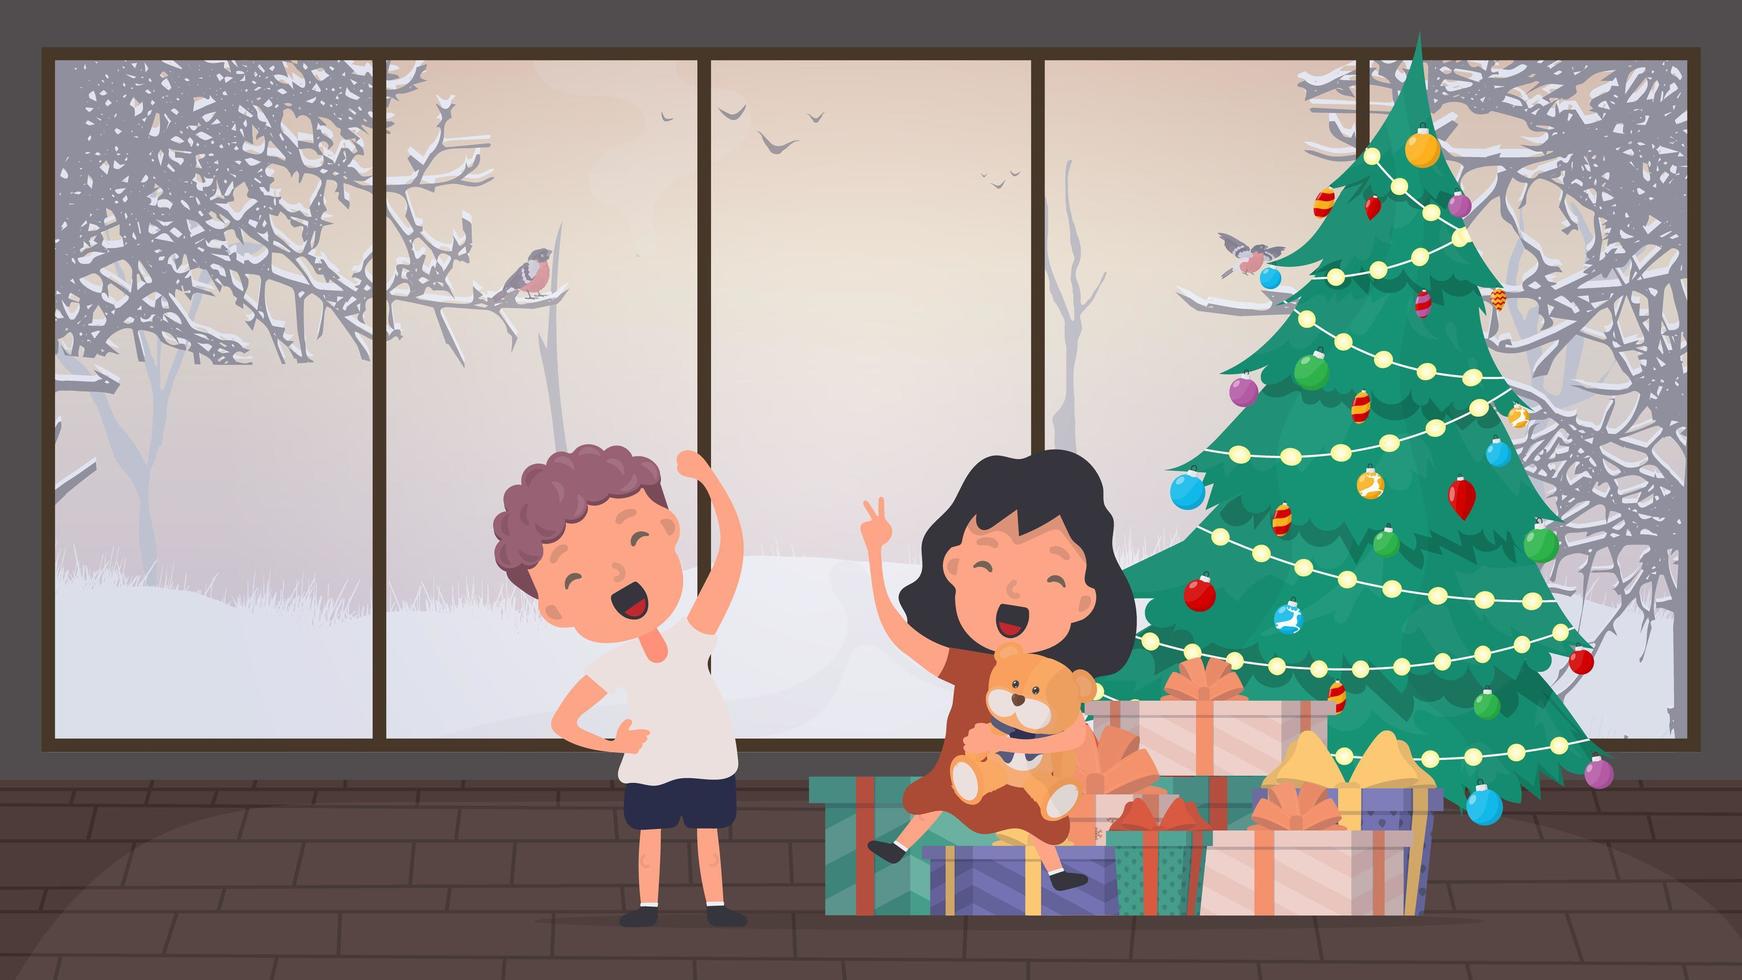 el niño se regocija con los regalos debajo del árbol. árbol de navidad, muchos regalos, año nuevo, navidad. vector